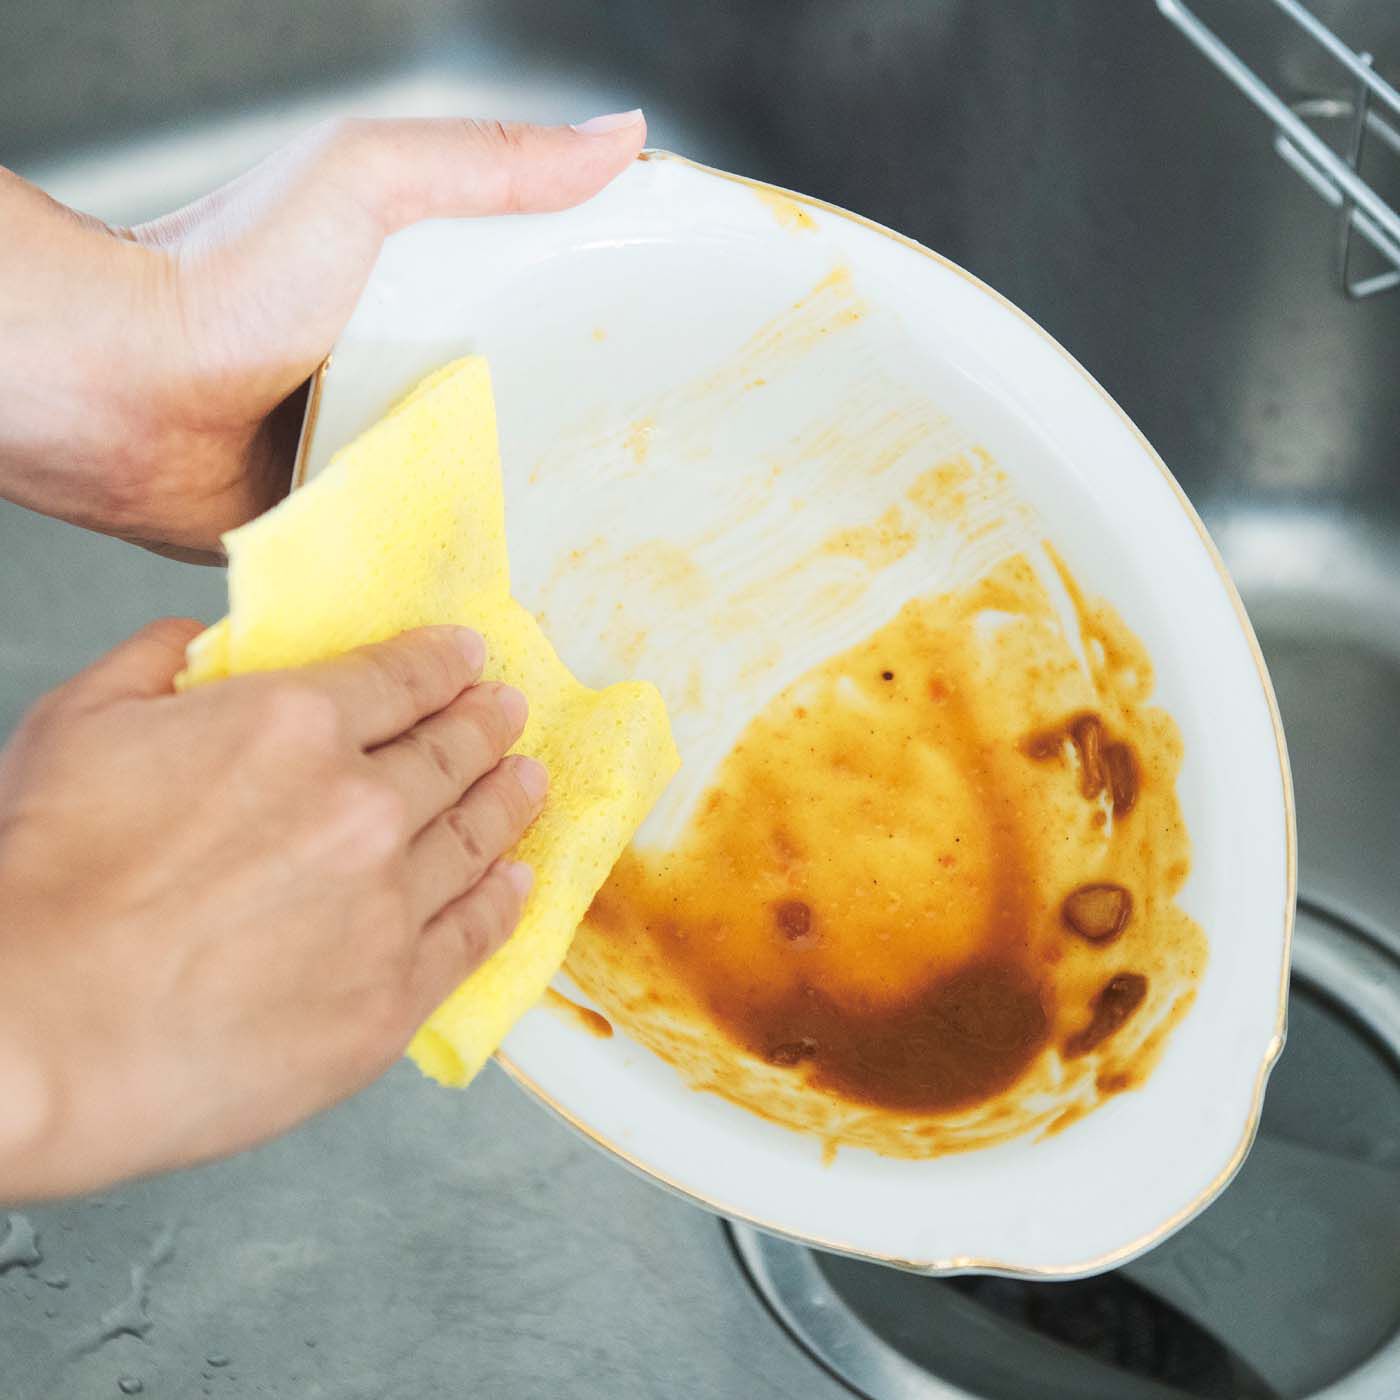 フェリシモの雑貨 Kraso|1/d after Curry ペーパースポンジの会|皿に残ったカレーをサッとふき取れば、食器洗いがらくちんに。